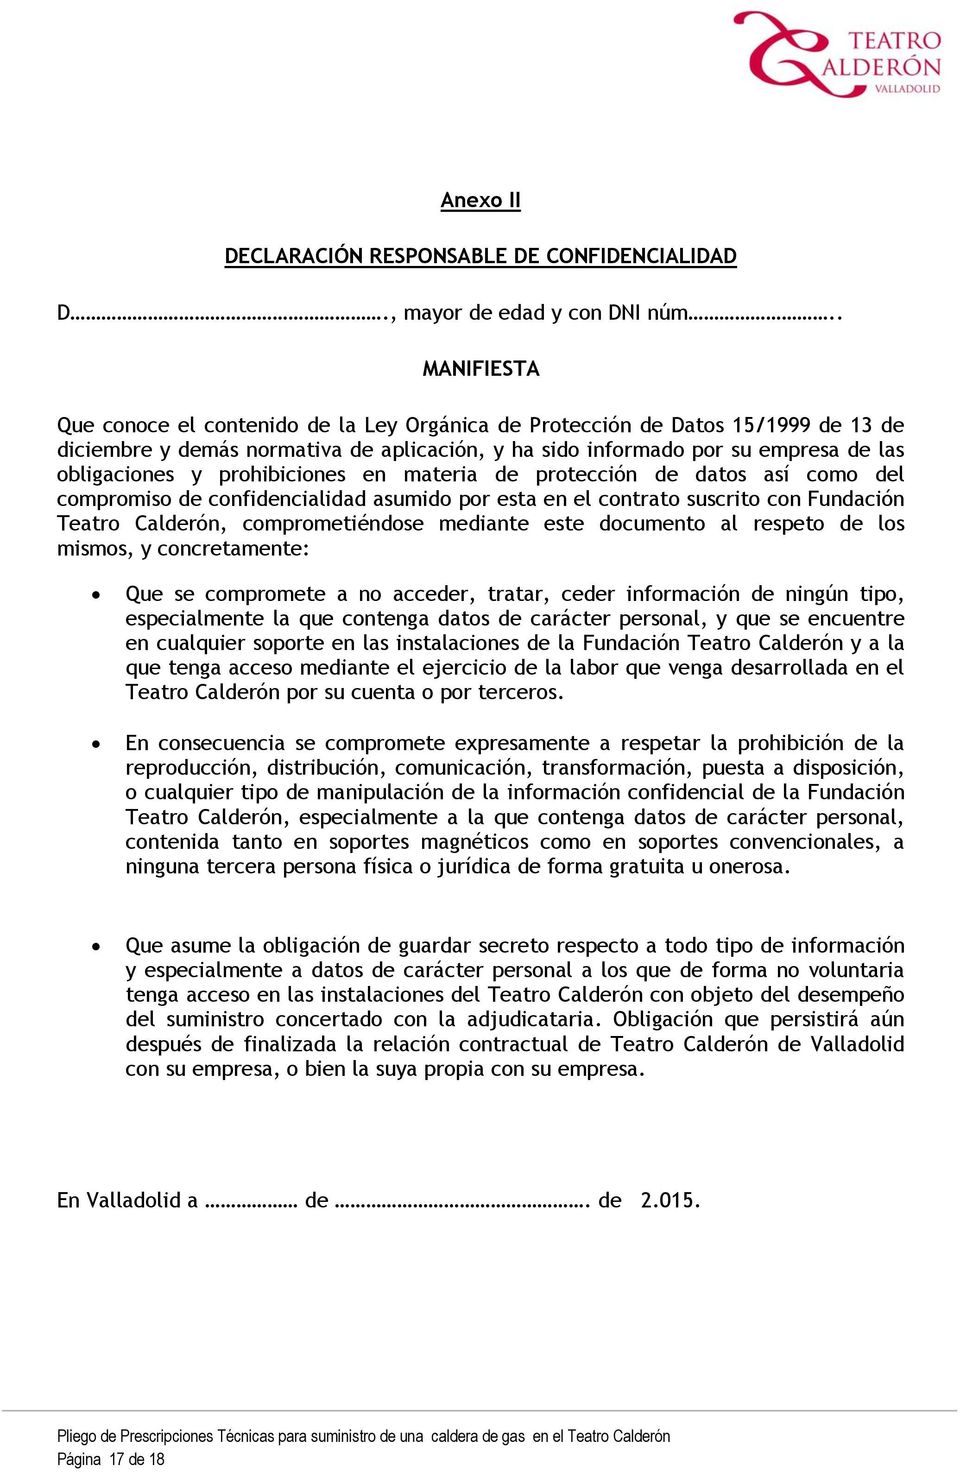 prohibiciones en materia de protección de datos así como del compromiso de confidencialidad asumido por esta en el contrato suscrito con Fundación Teatro Calderón, comprometiéndose mediante este